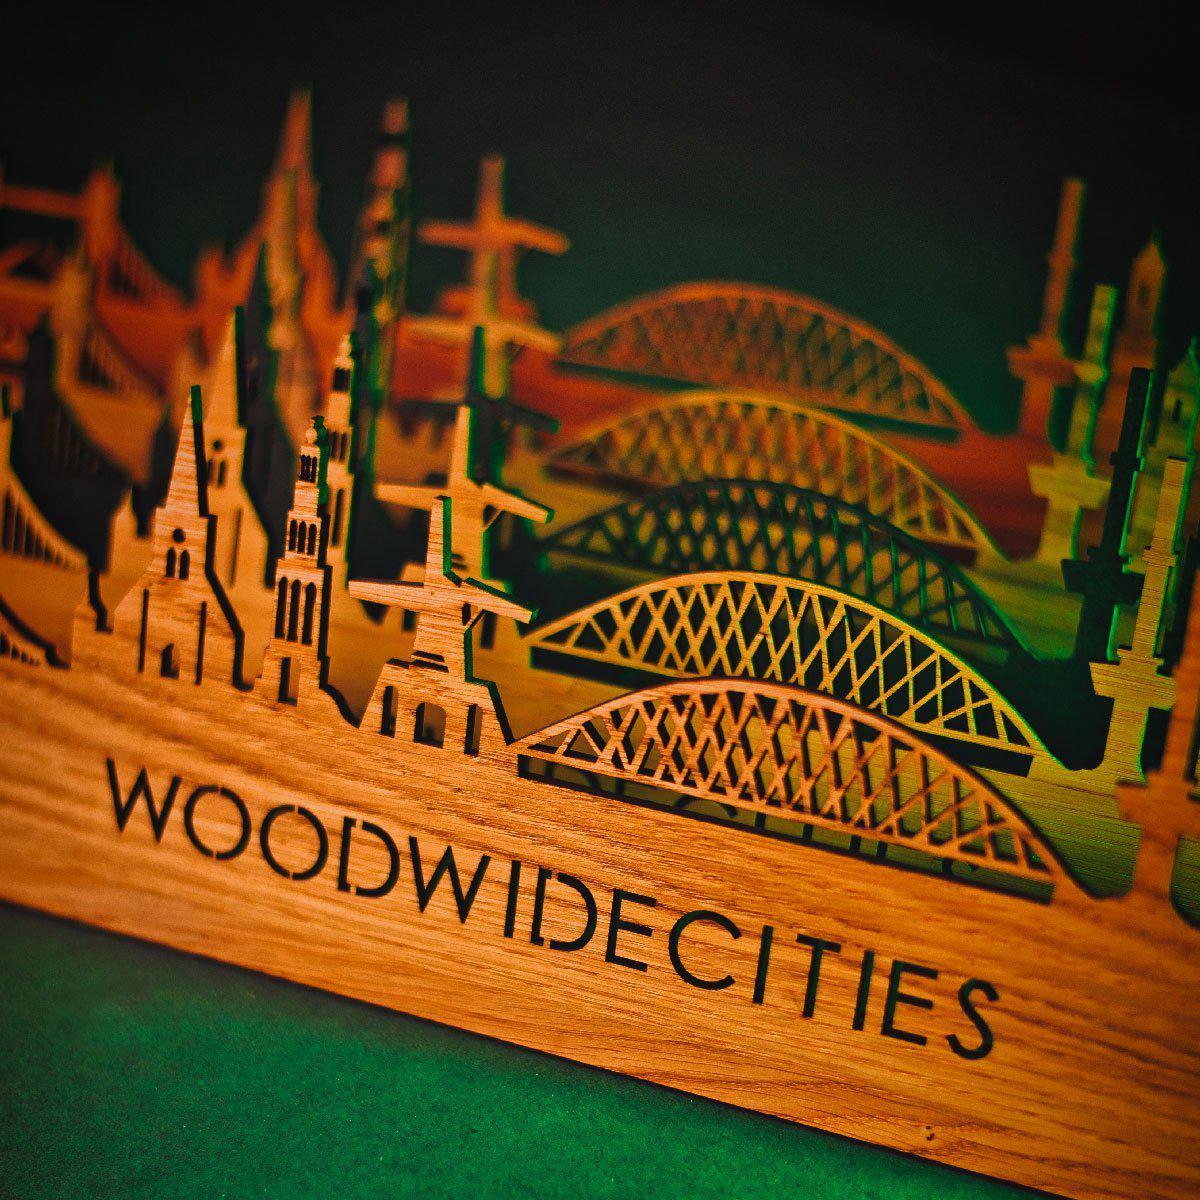 Skyline Klok Roosendaal Bamboe houten cadeau wanddecoratie relatiegeschenk van WoodWideCities